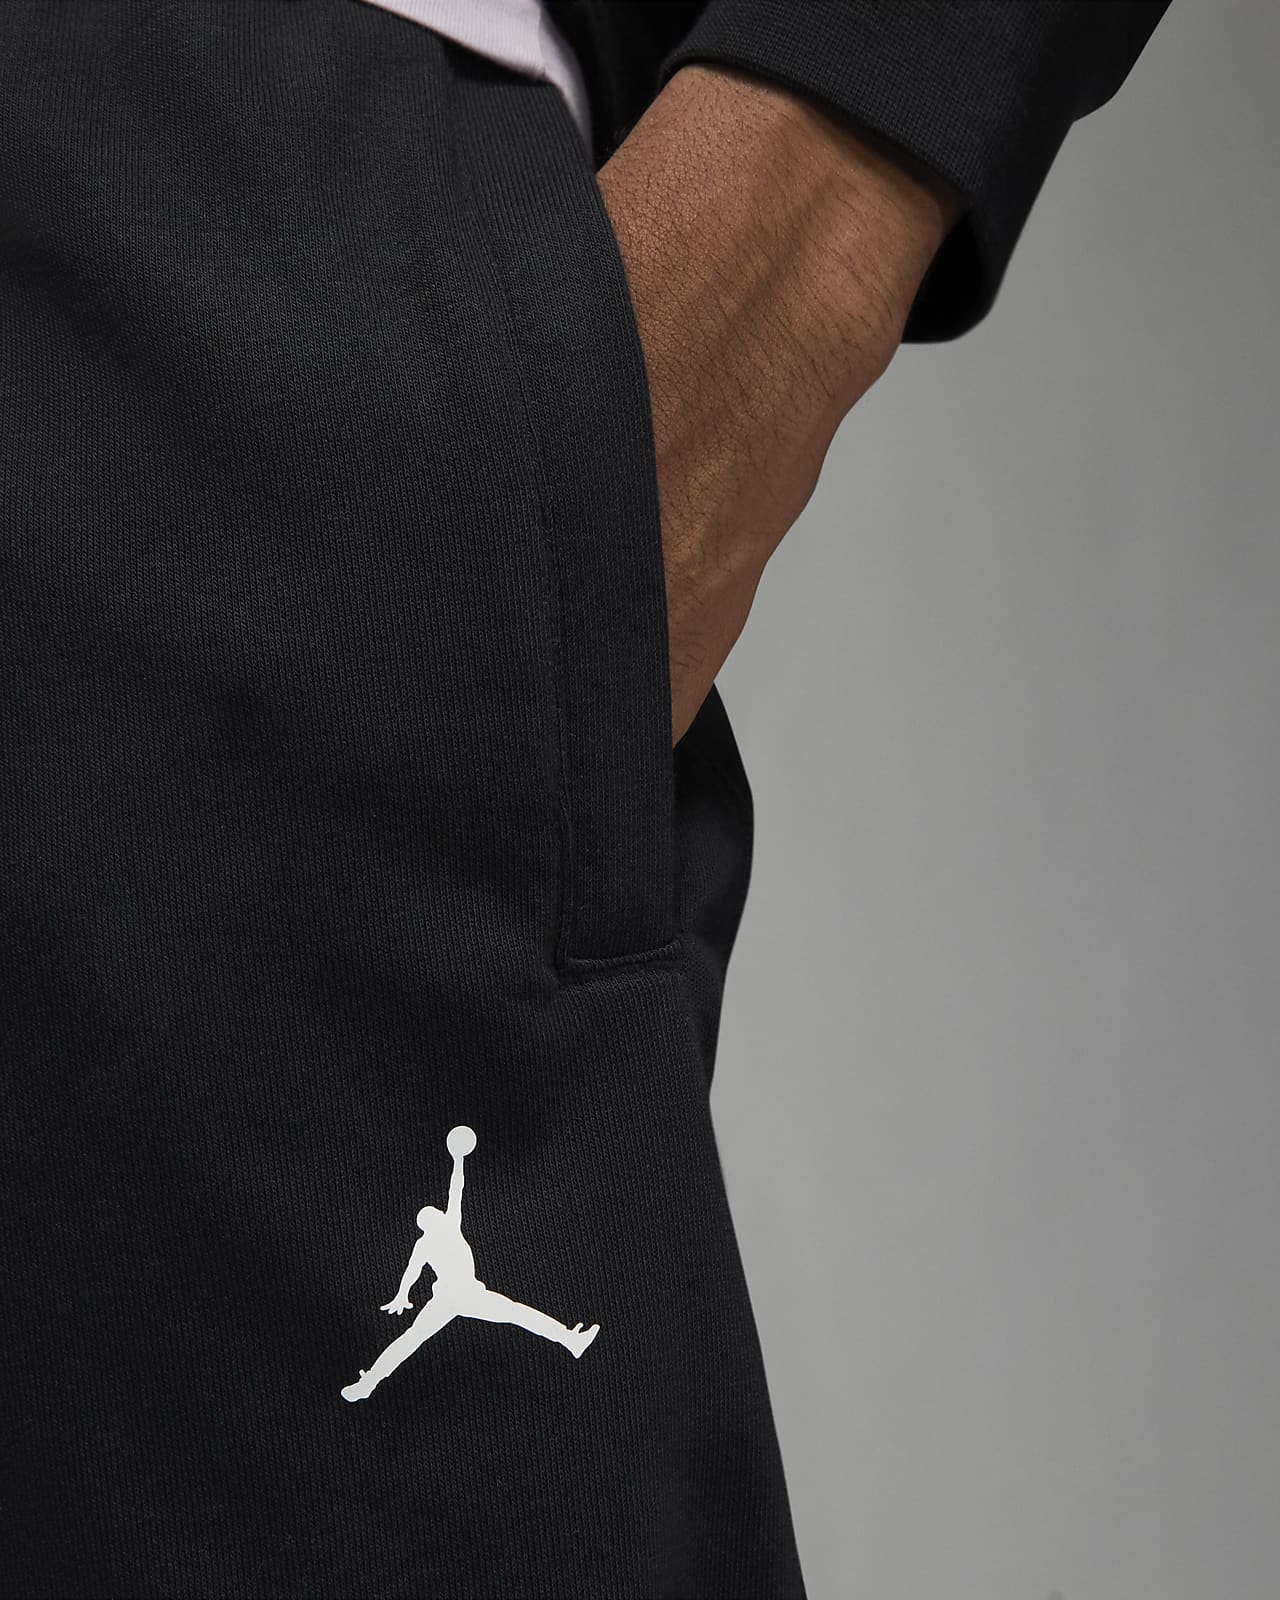 Jordan Dri-FIT Sport Crossover Men's Fleece Trousers. Nike NL